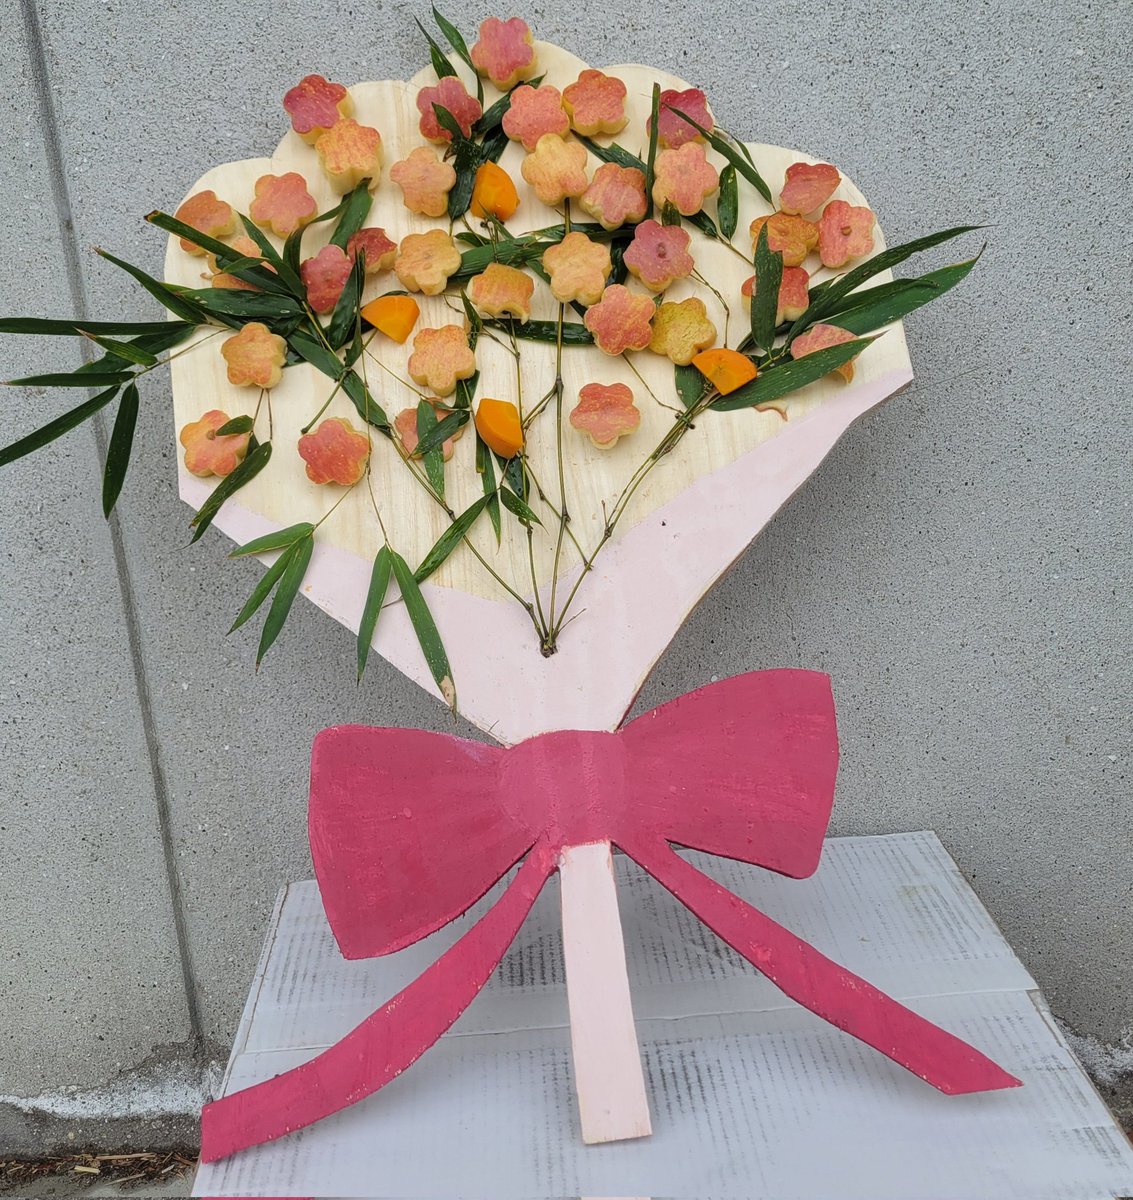 今日は『母の日』💐
昨年母になったシンファに感謝を込めて、笹とリンゴ🍎で作った花束をプレゼントしました。
#熊本市動植物園
#シセンレッサーパンダ
#シンファ♀️